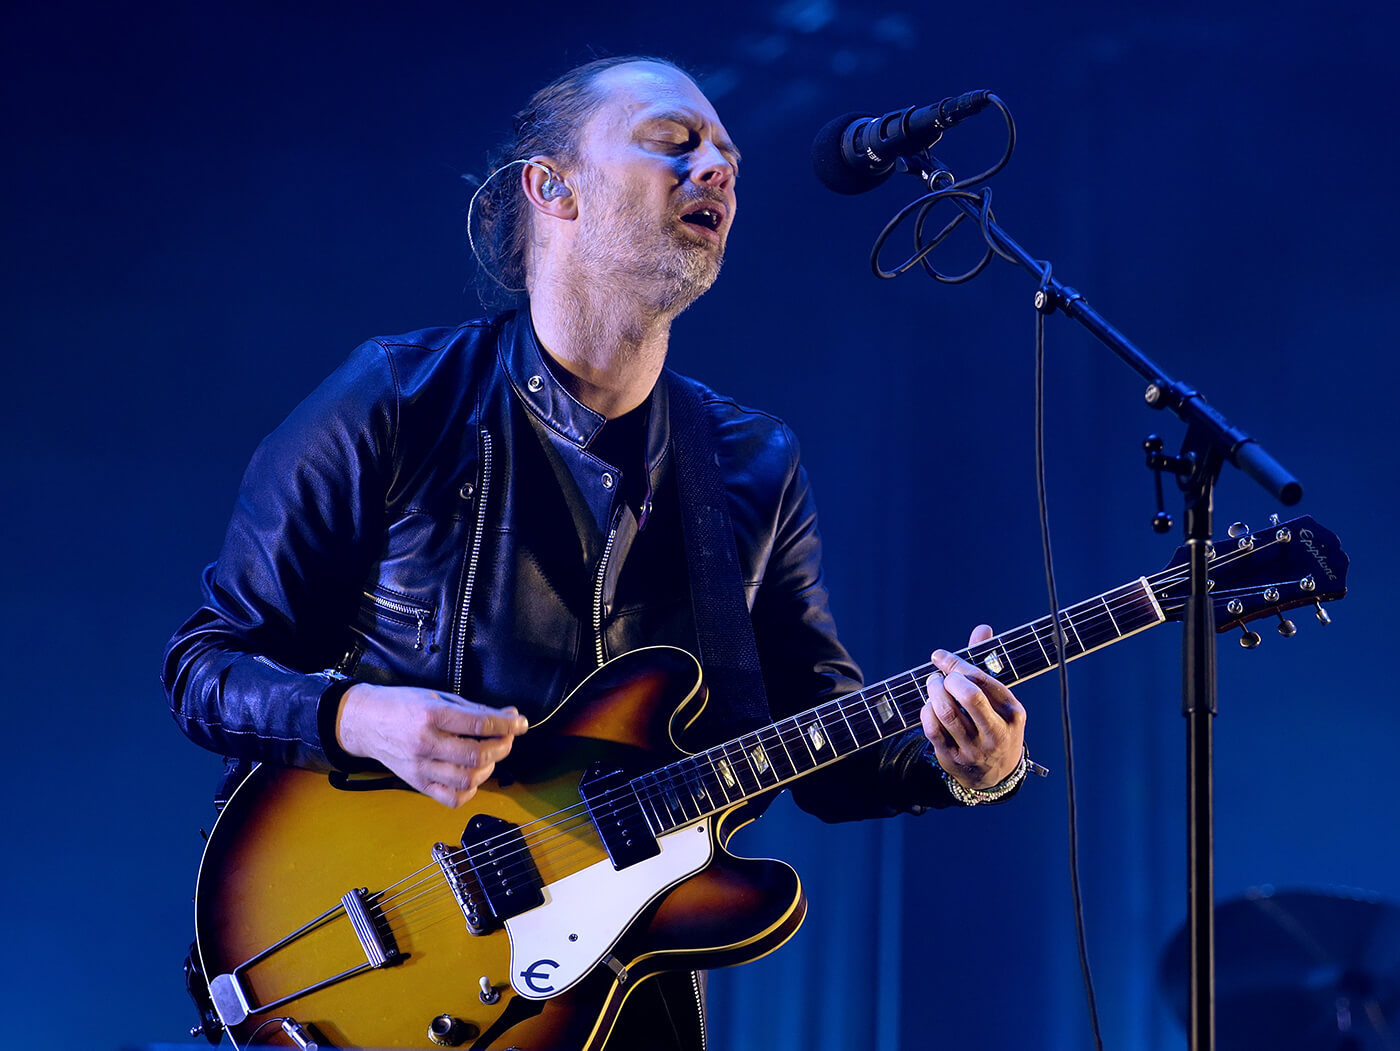 Radiohead Thom Yorke performing live